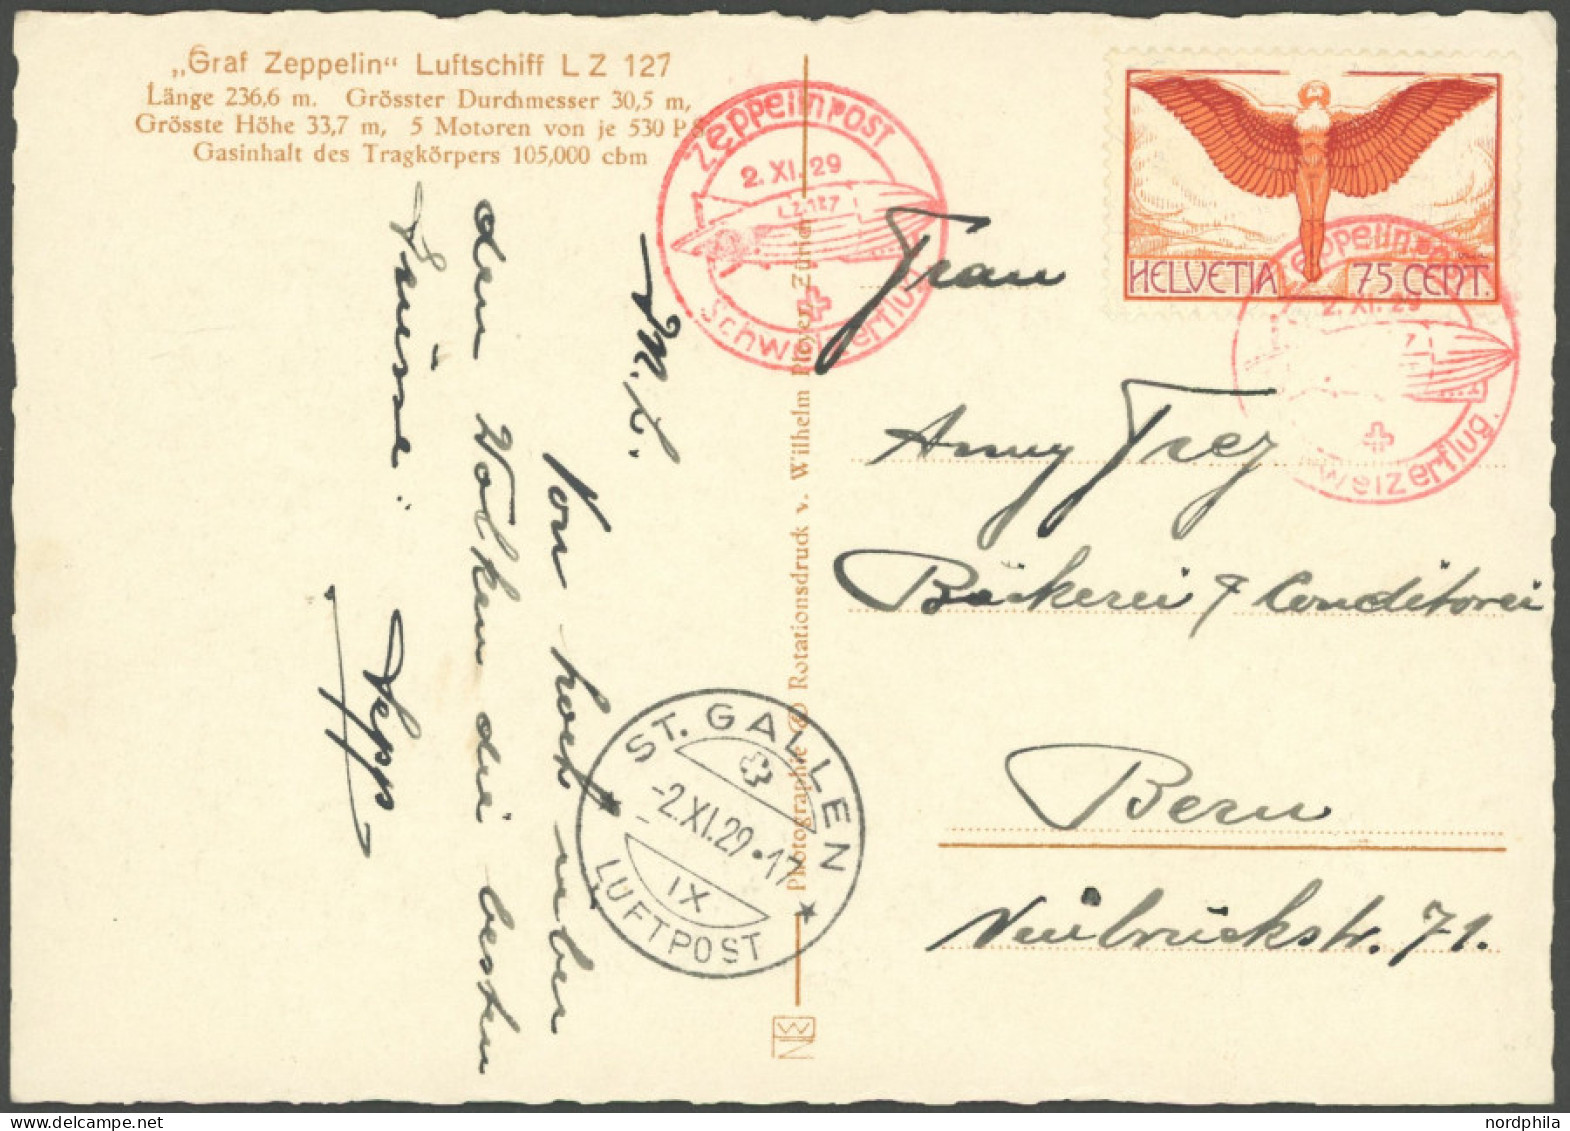 ZEPPELINPOST 46 BRIEF, 1929, Fahrt Nach Zürich-Dübendorf, Schweizer Post, Auf Fotokarte Mit Einzelfrankatur Mi.Nr. 190x, - Airmail & Zeppelin